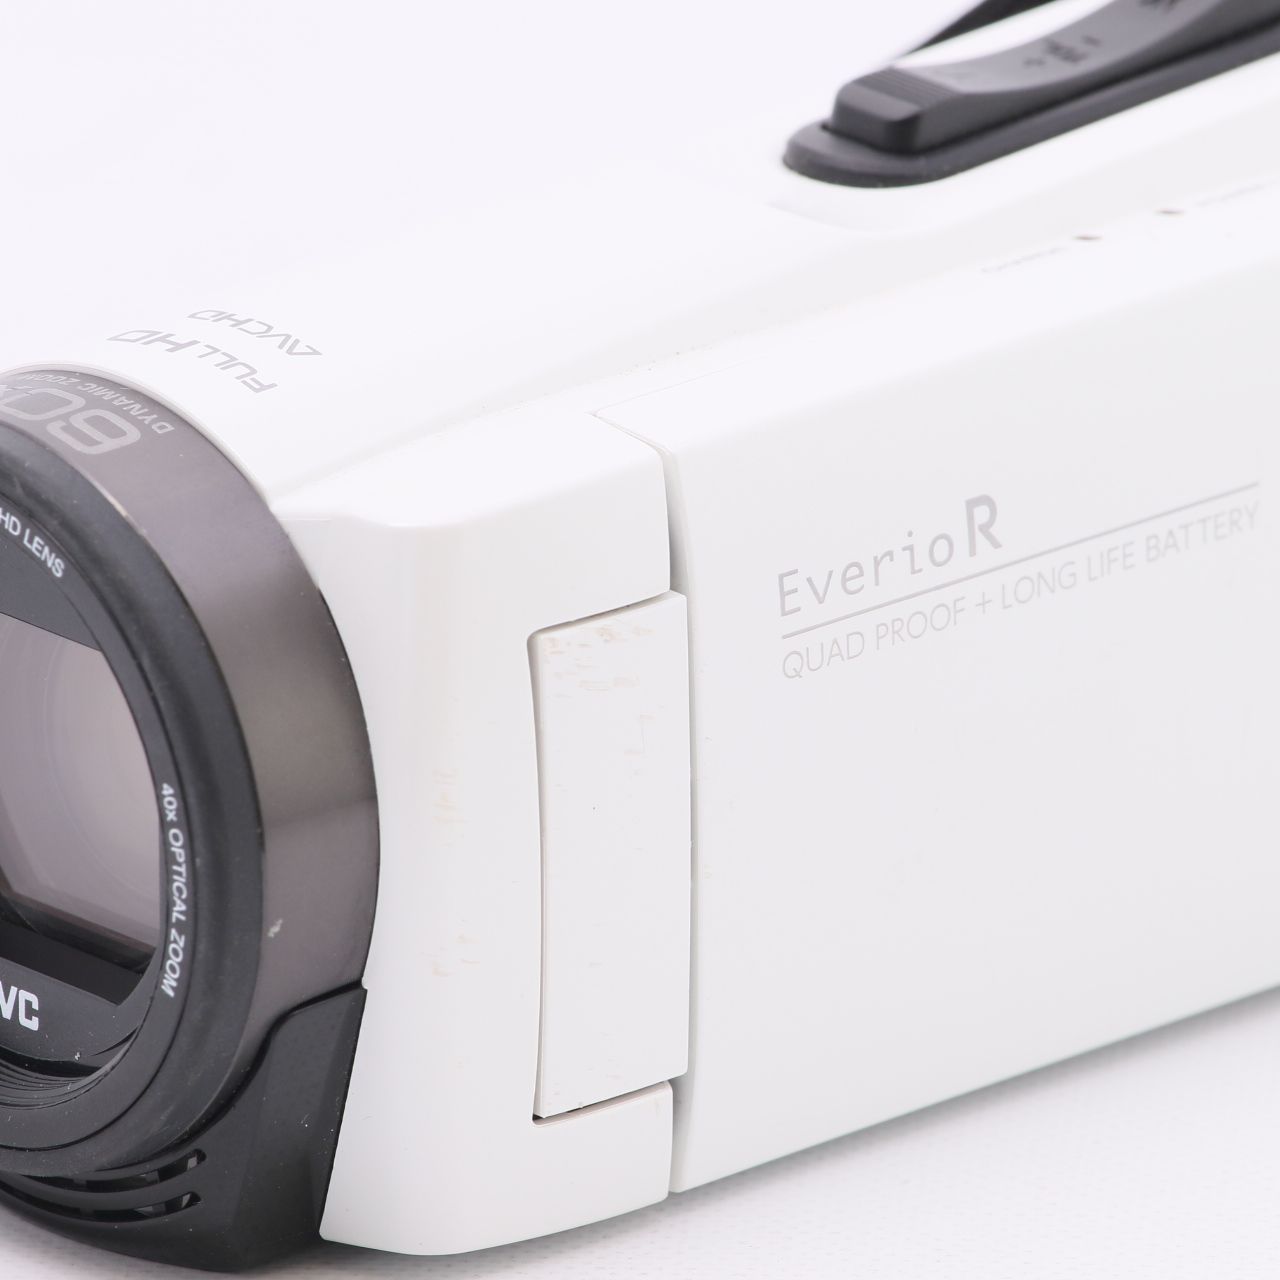 お得クーポン発行中 JVCKENWOOD JVC ビデオカメラ Everio R 防水 防塵 32GB カーキ GZ-R470-G 